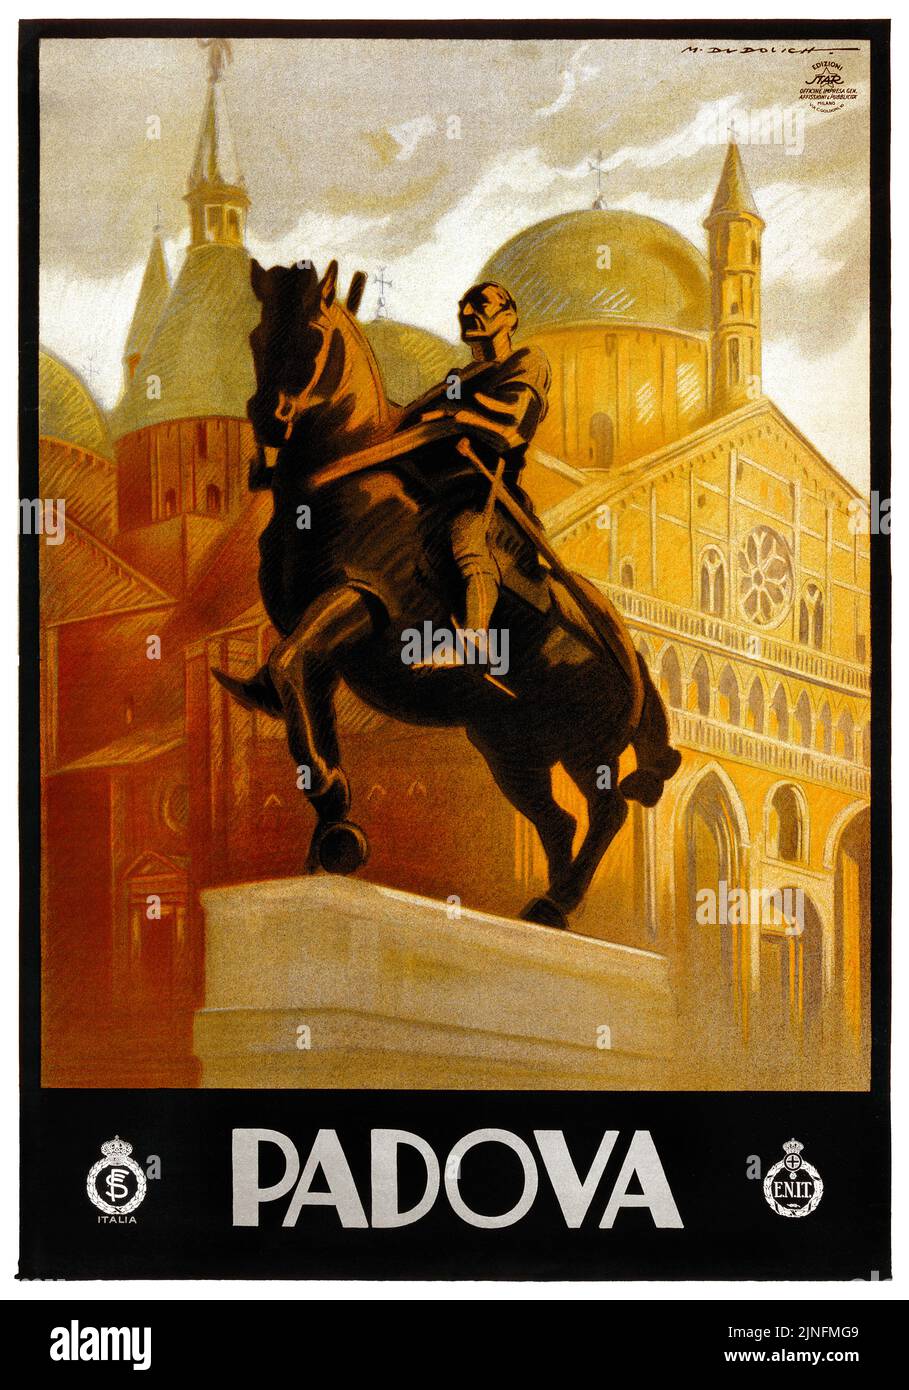 Padova von Marcello Dudovich (1878-1962). Plakat veröffentlicht 1930 in Italien. Stockfoto